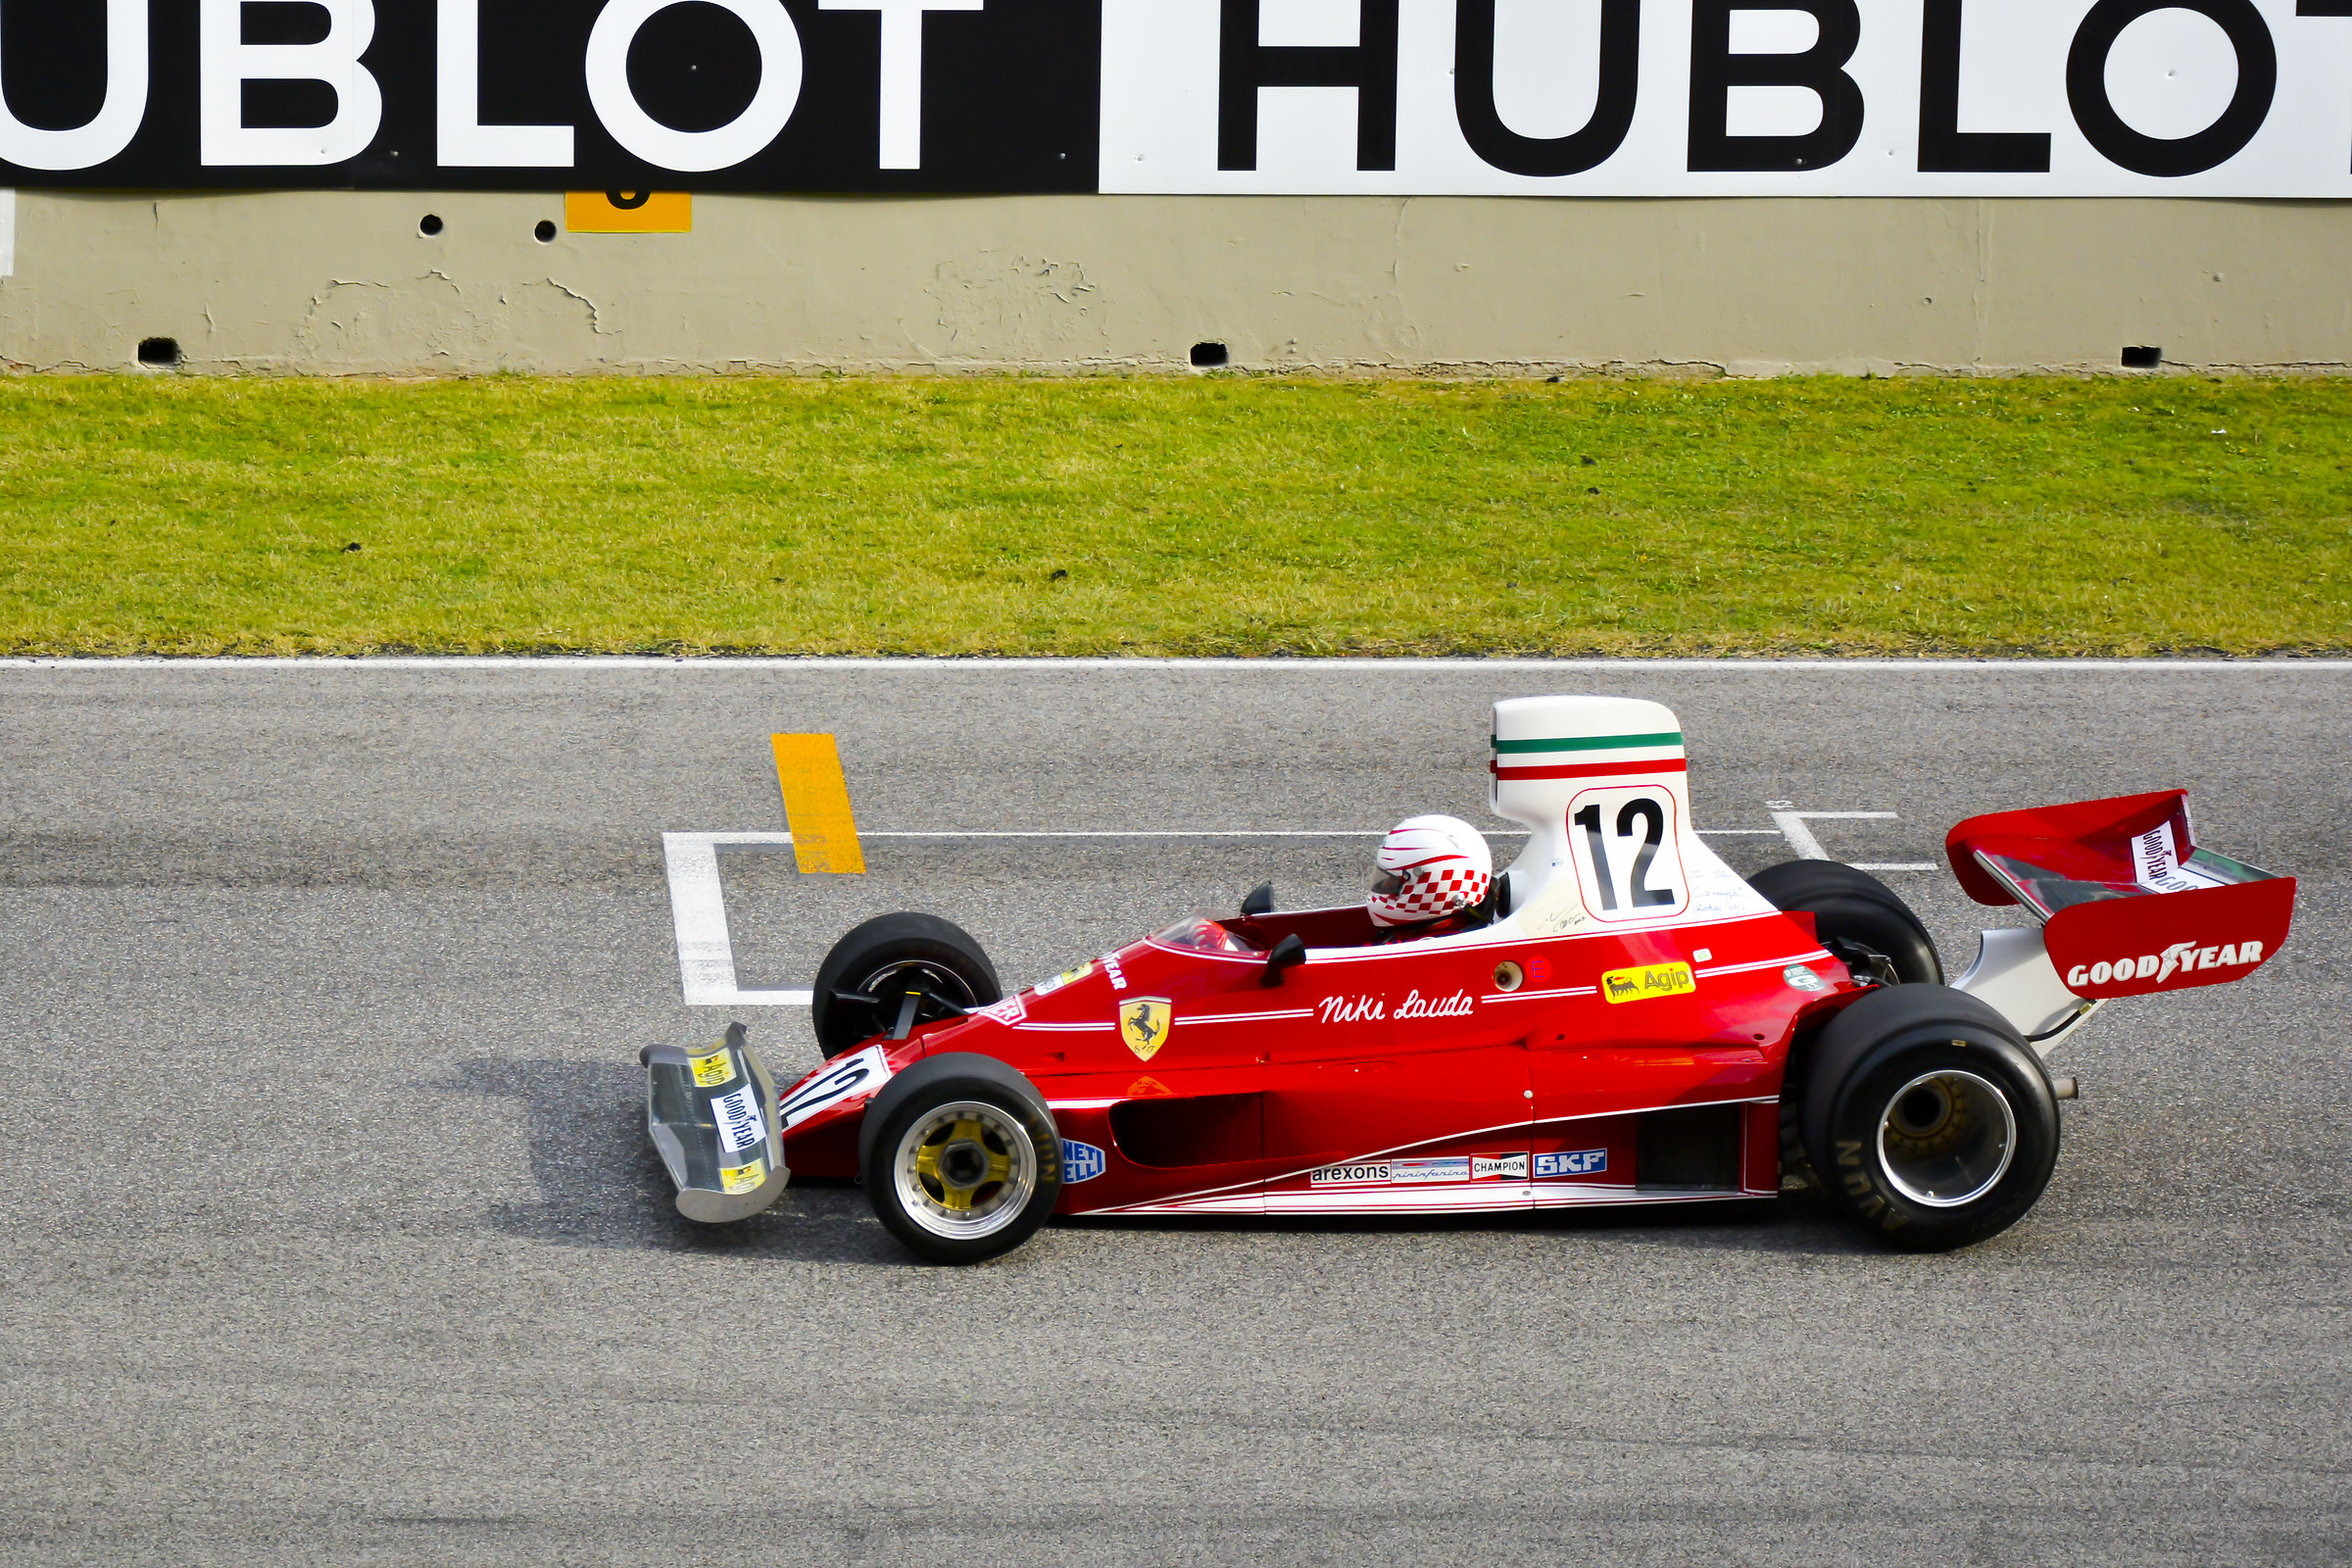 La Ferrari F1 di Niki Lauda...